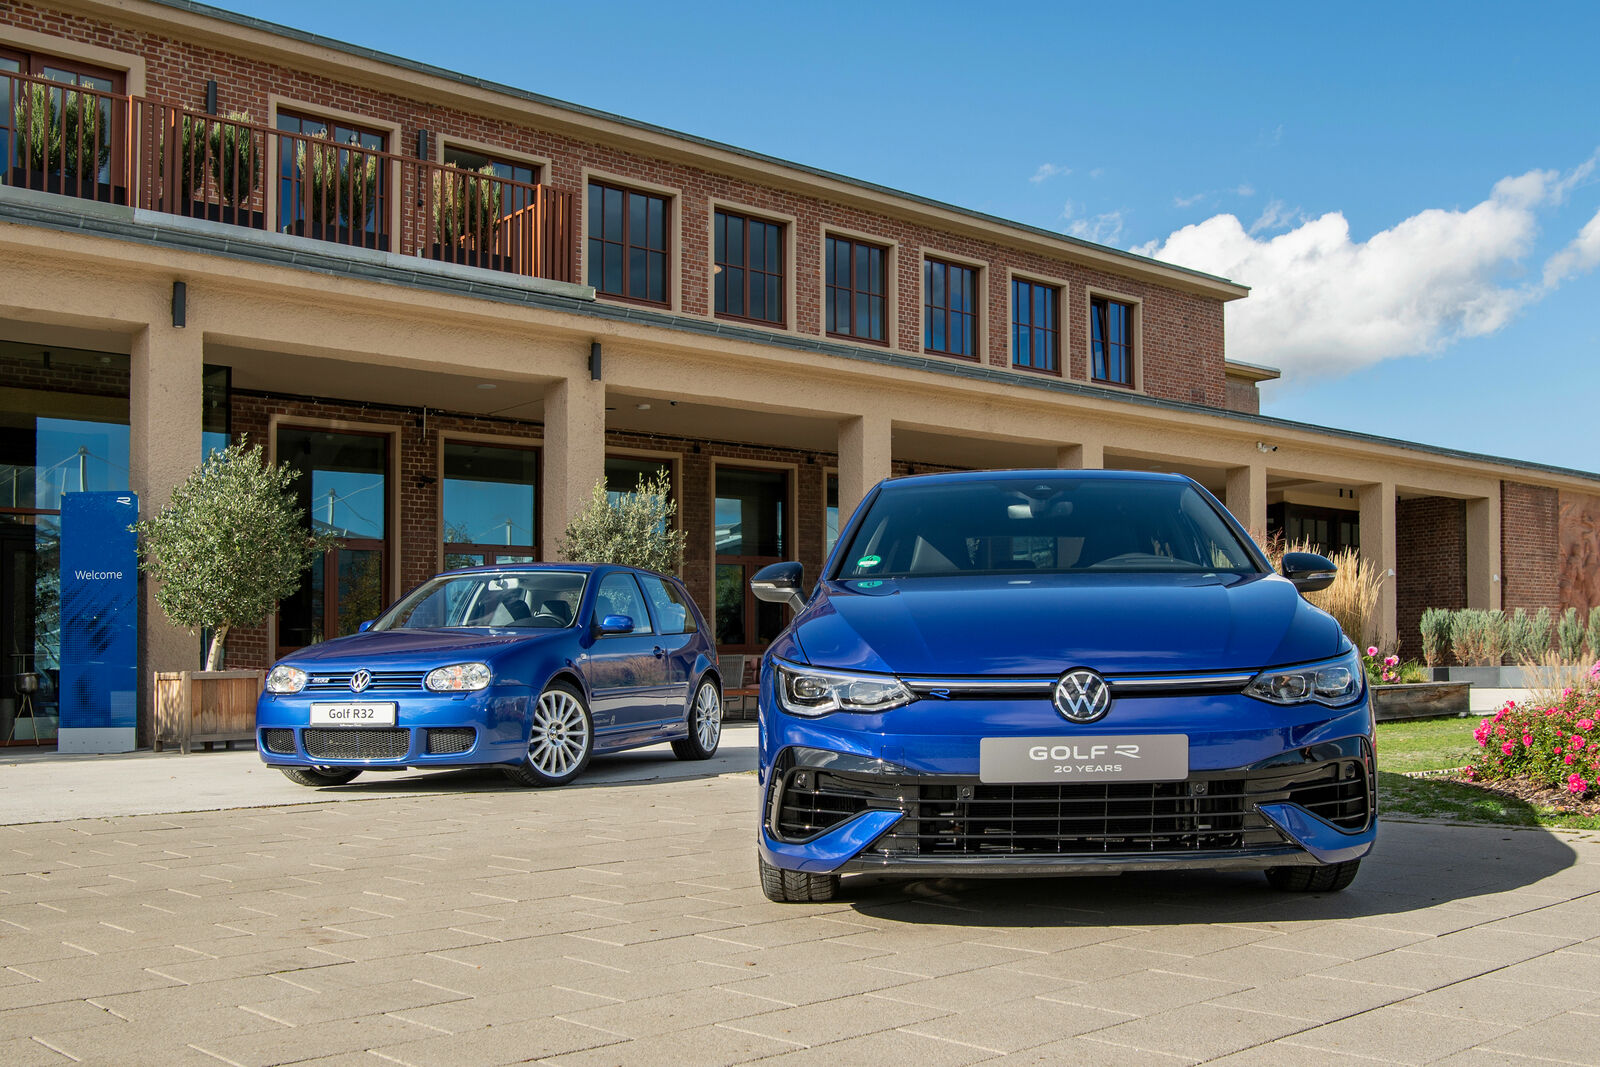 Volkswagen Golf R „20 Years“ und Golf R32